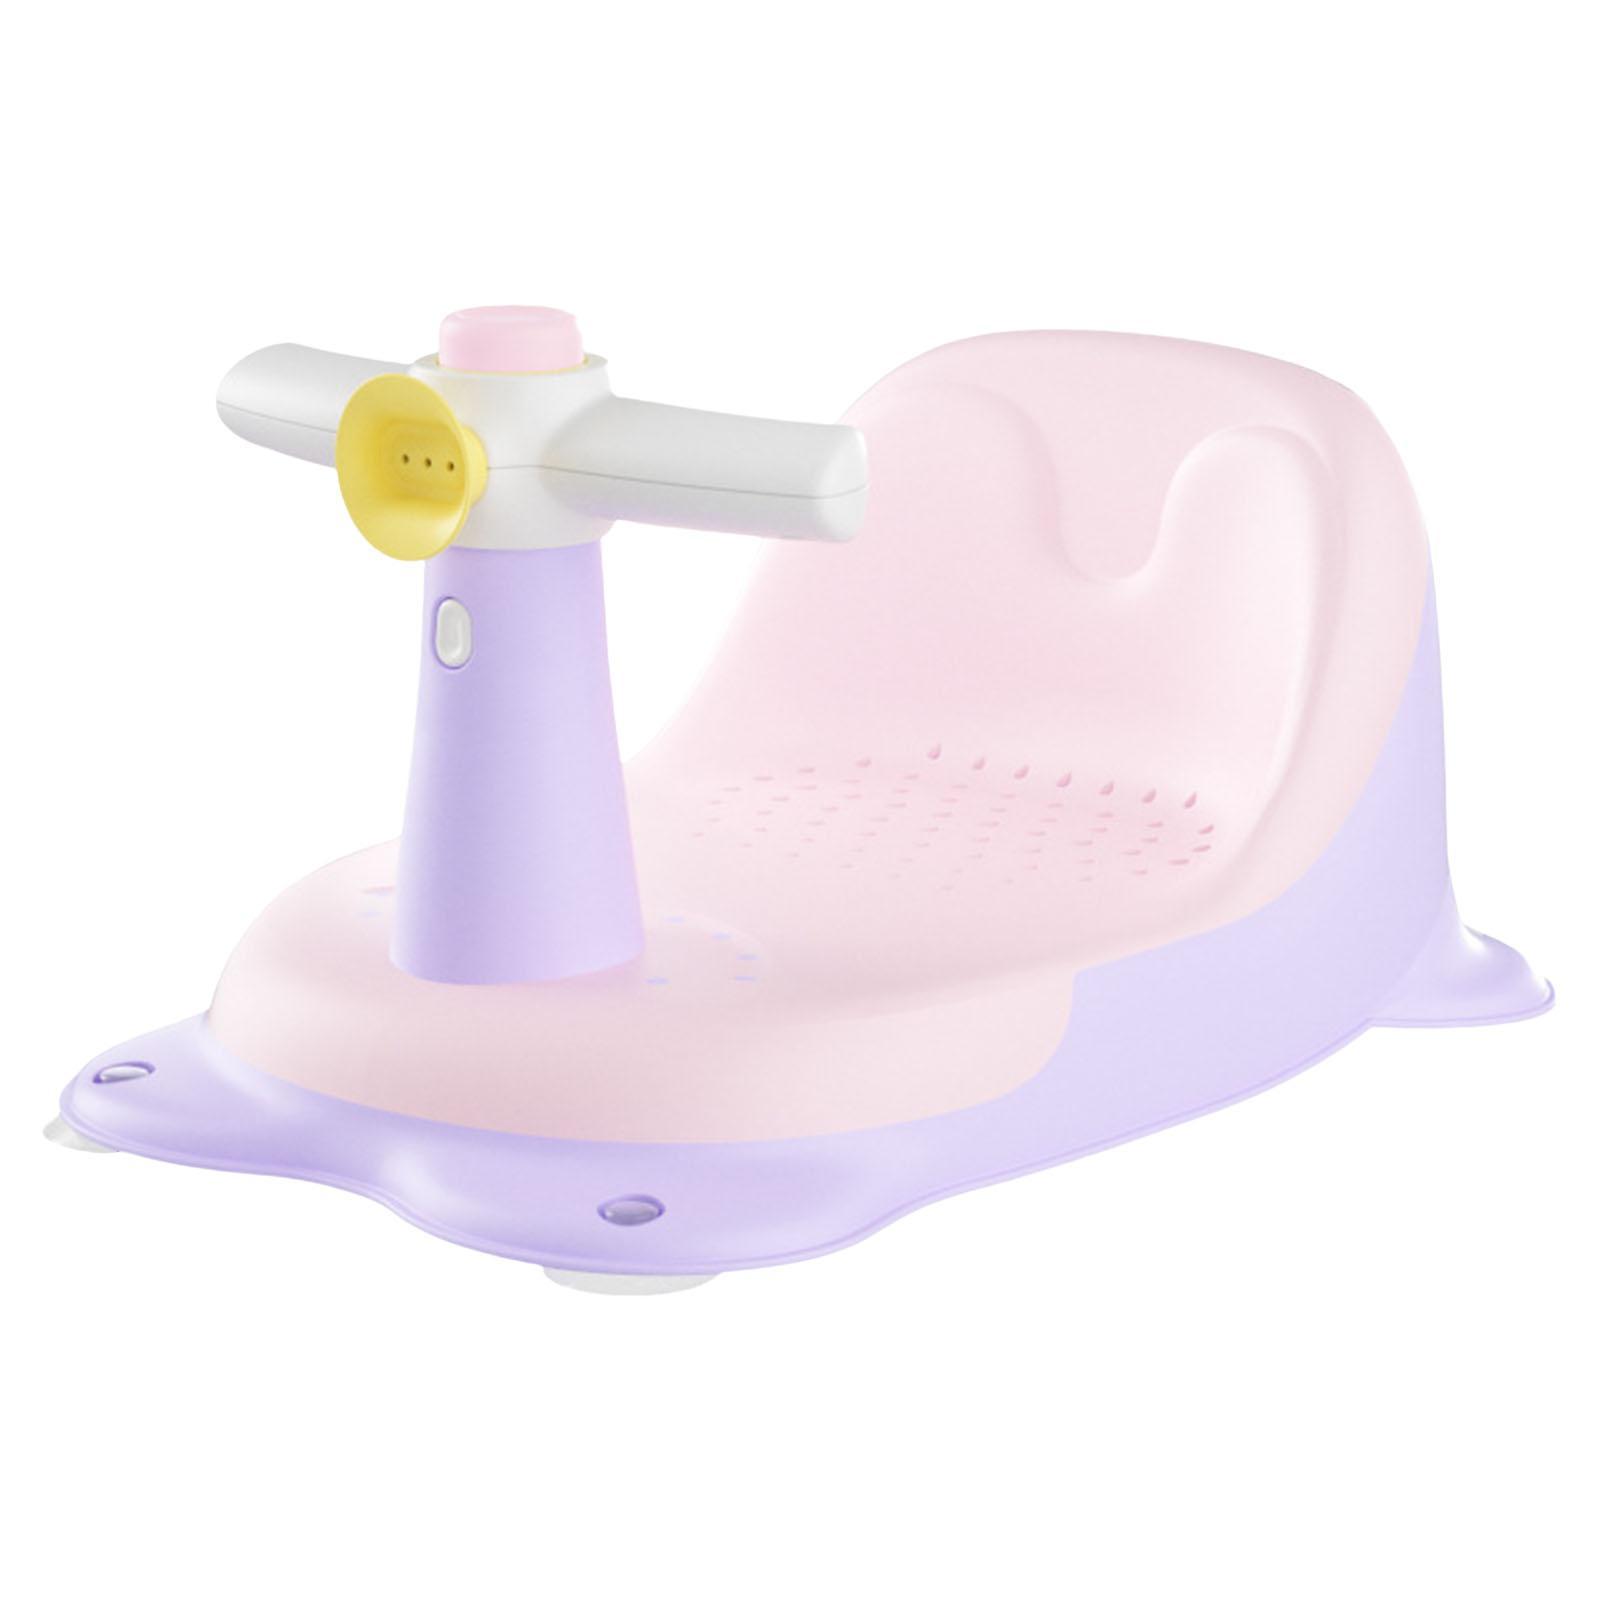 Portable Baby Bath Tub Seat Bath Tub Seat Bathtub Chair for Baby Gifts